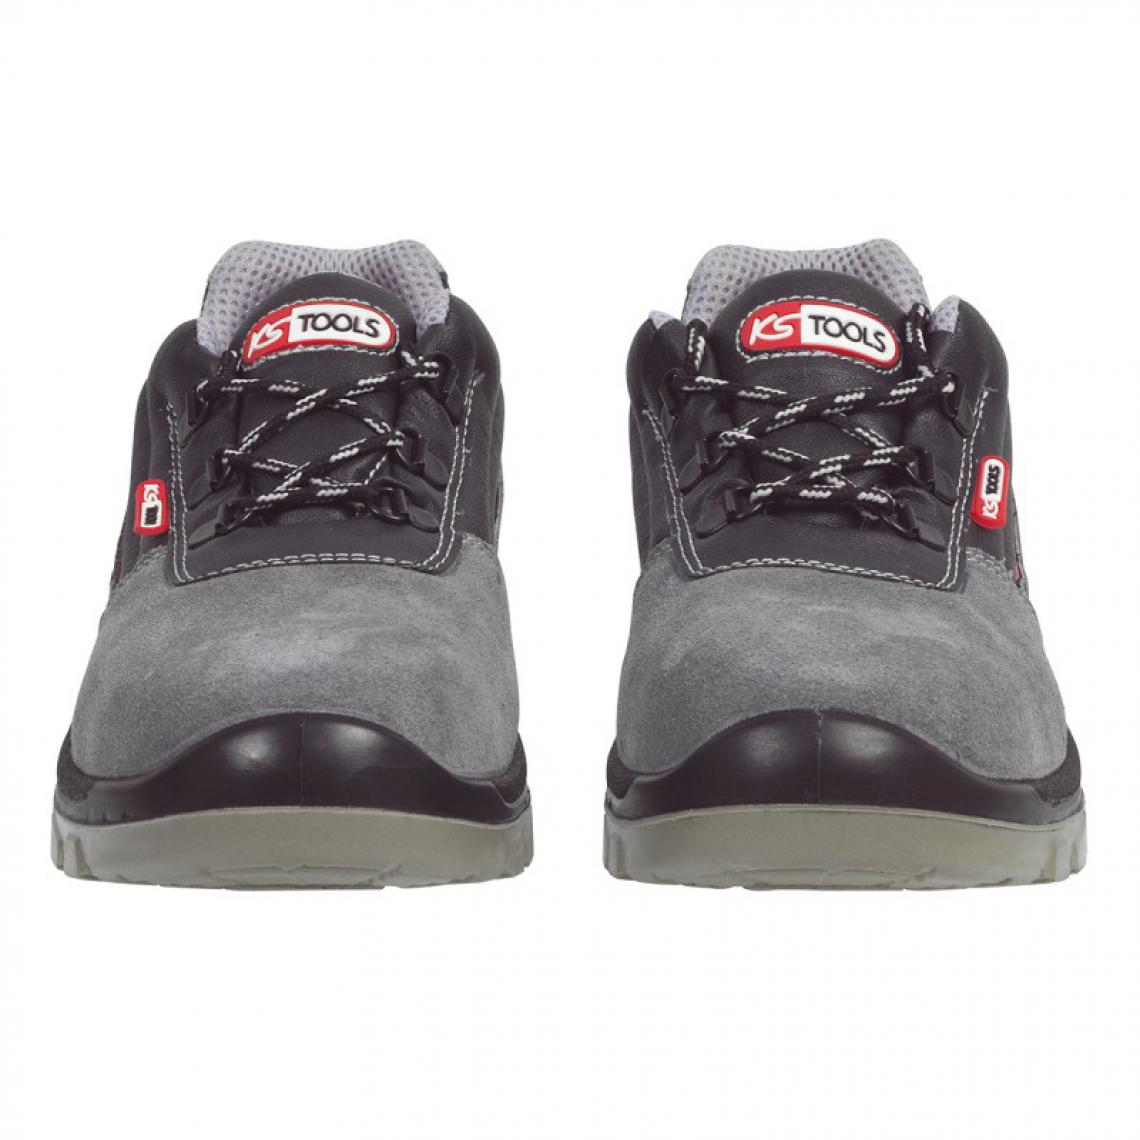 Kstools - Chaussures de sécurité KSTOOLS Couleur grise taille 42 - Equipement de Protection Individuelle